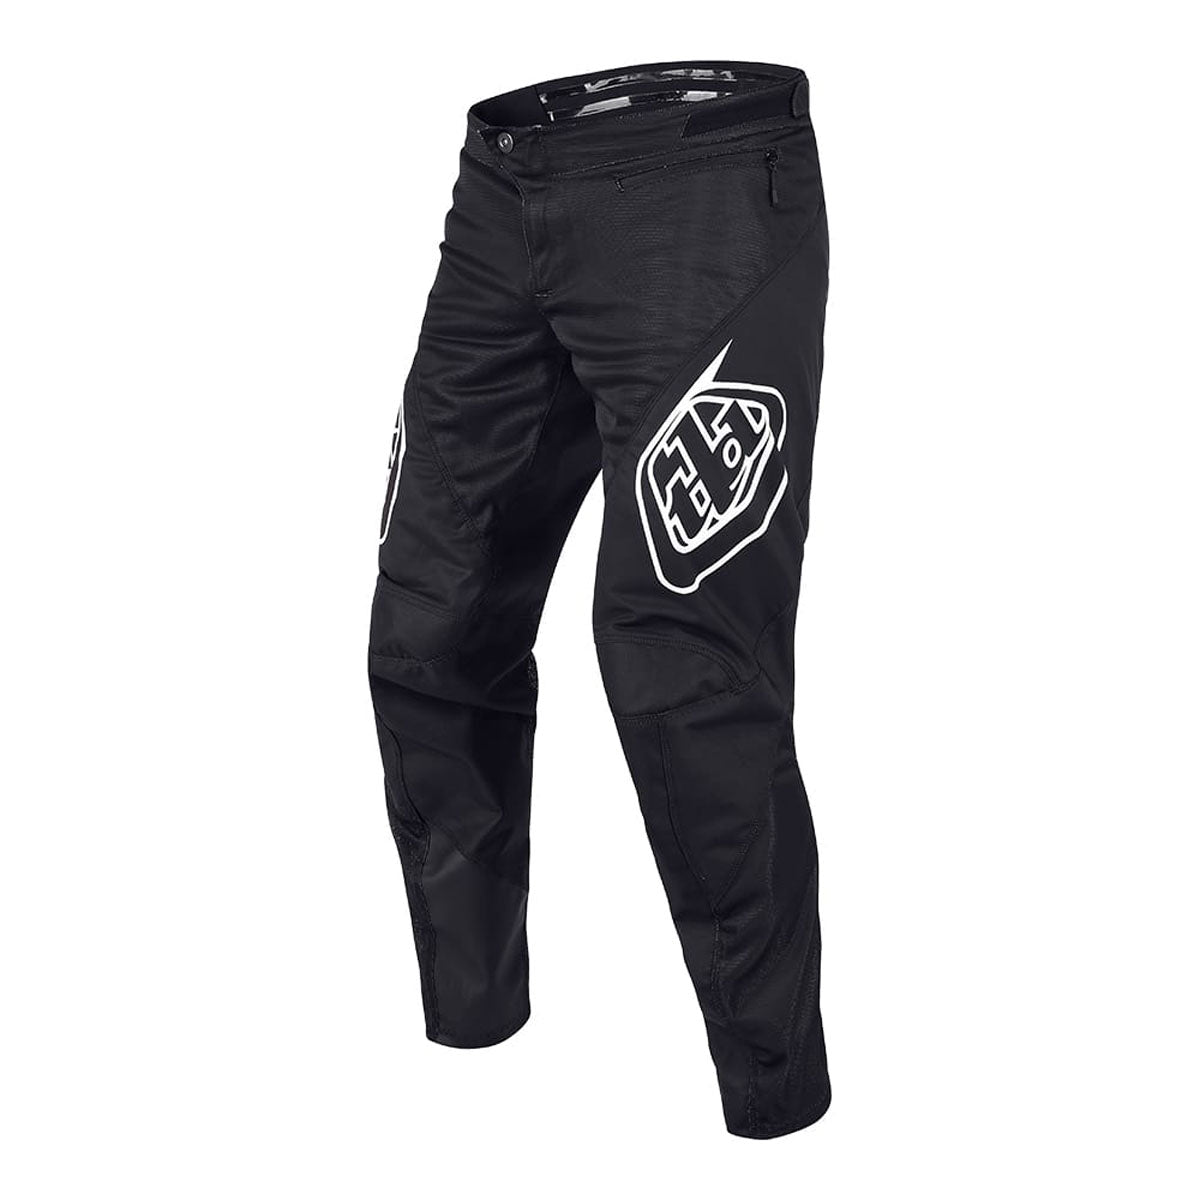 Troy Lee Designs Sprint Pants - Black 